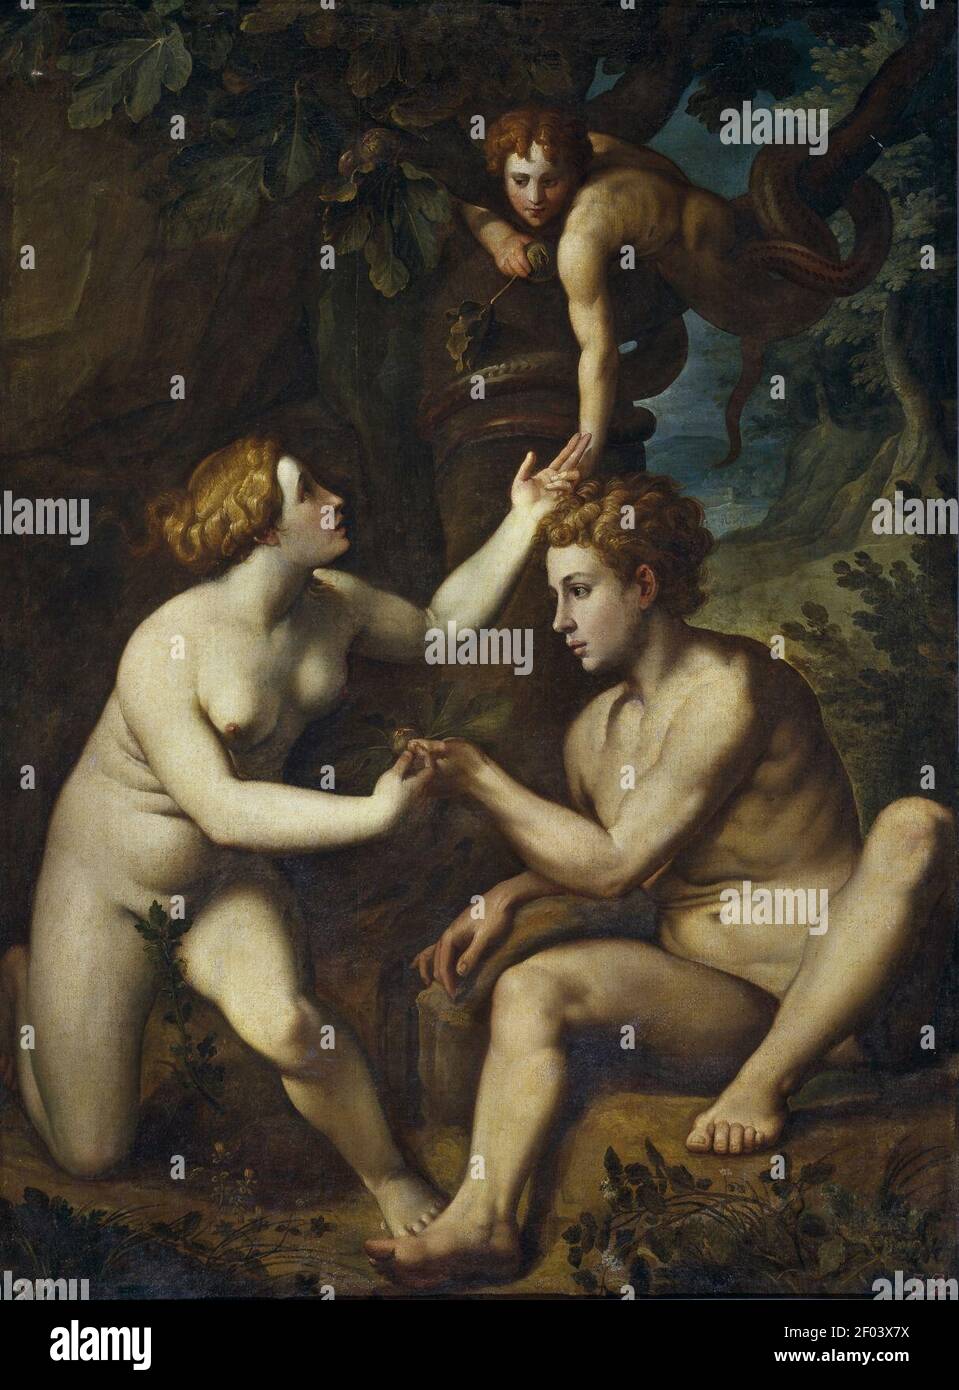 Pietro Facchetti - Adamo ed Eva ricevono dal frutto proibito. Foto de stock